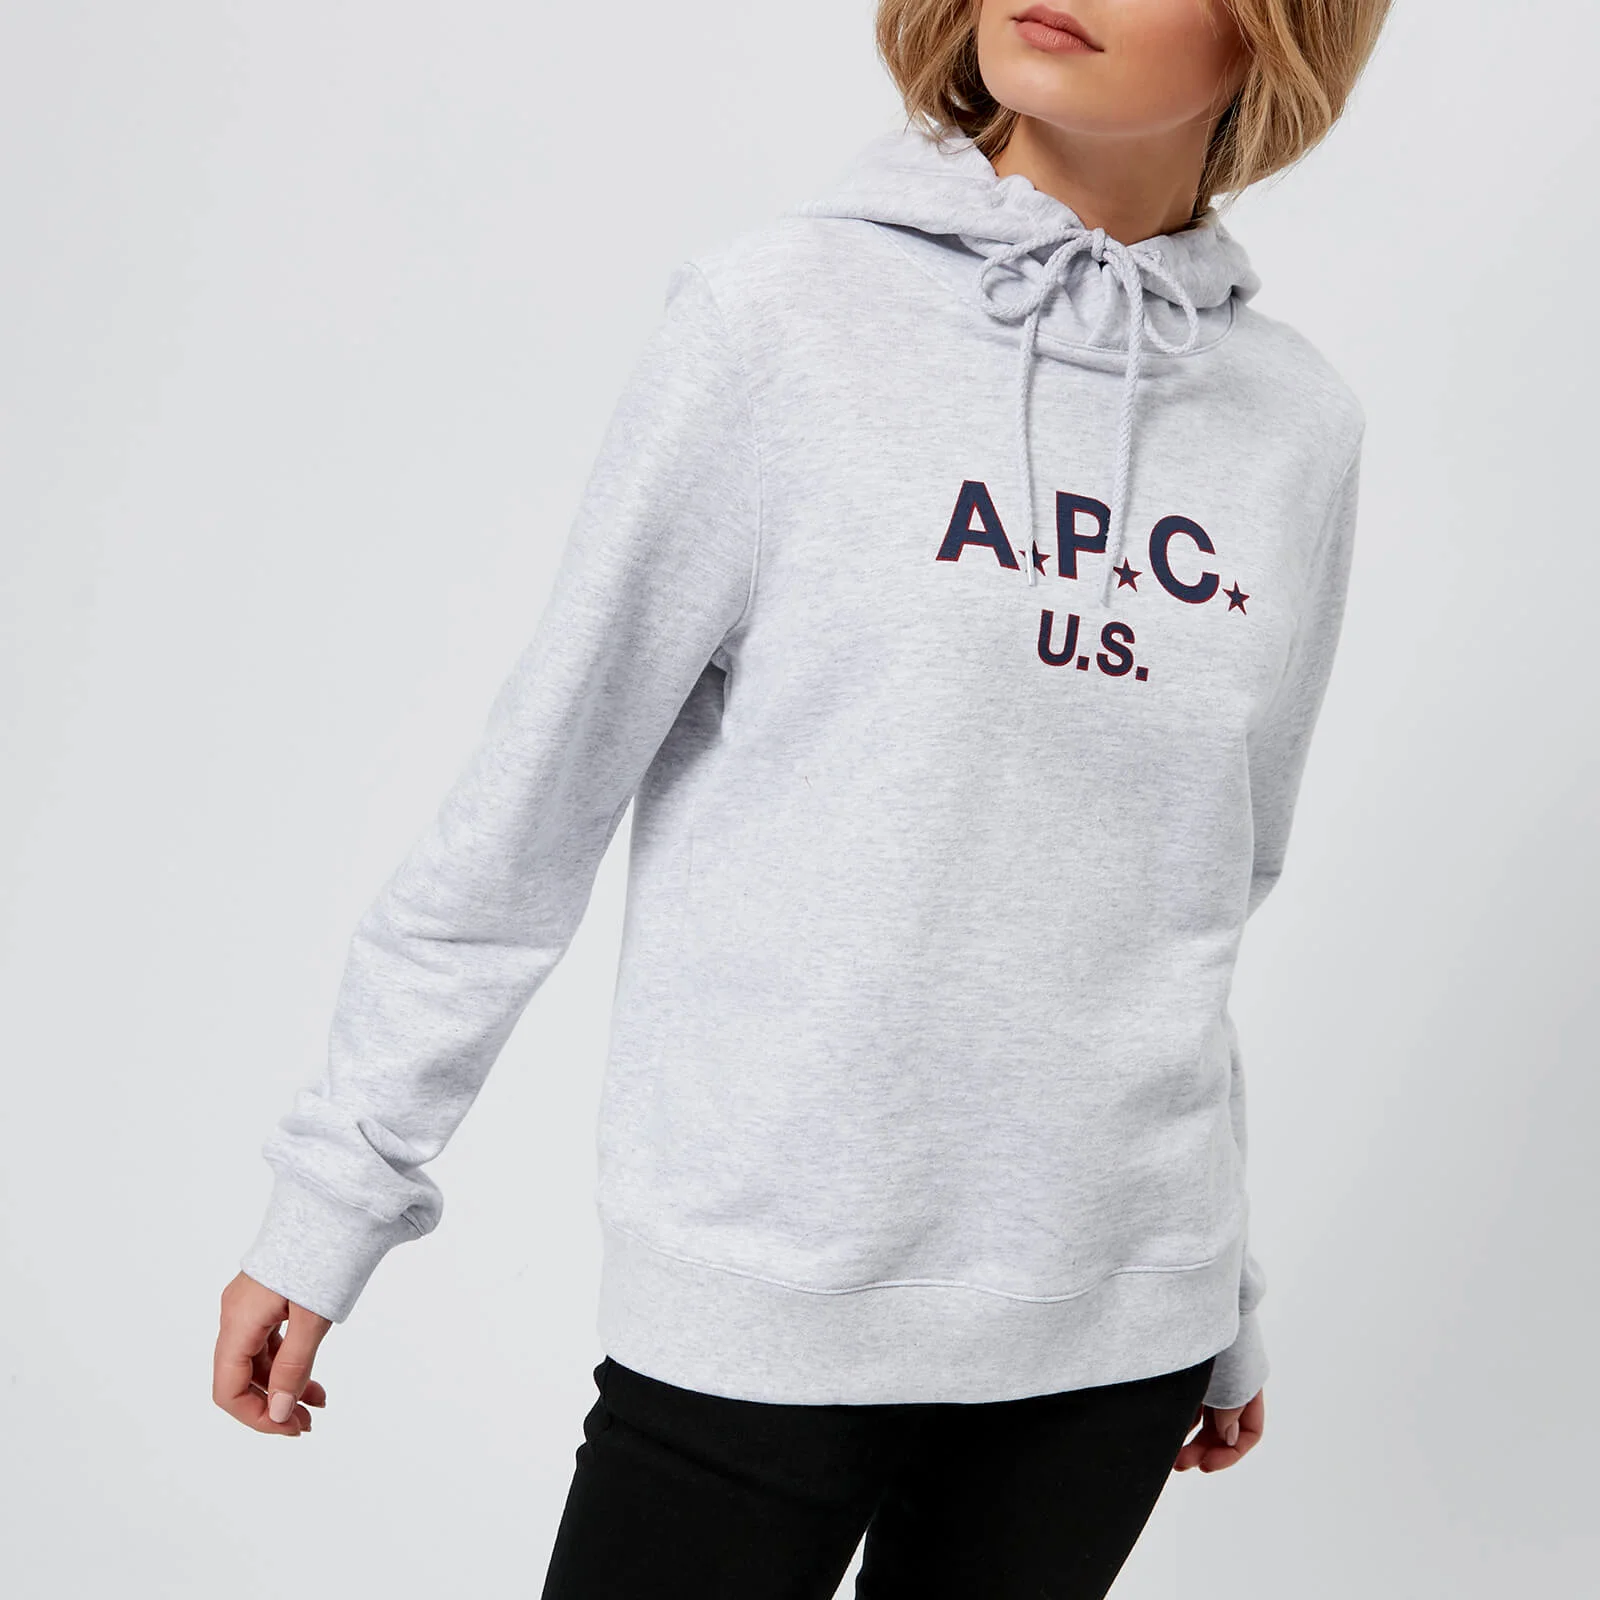 A.P.C. Women's U.S. Hoody Sweatshirt - Grey Image 1